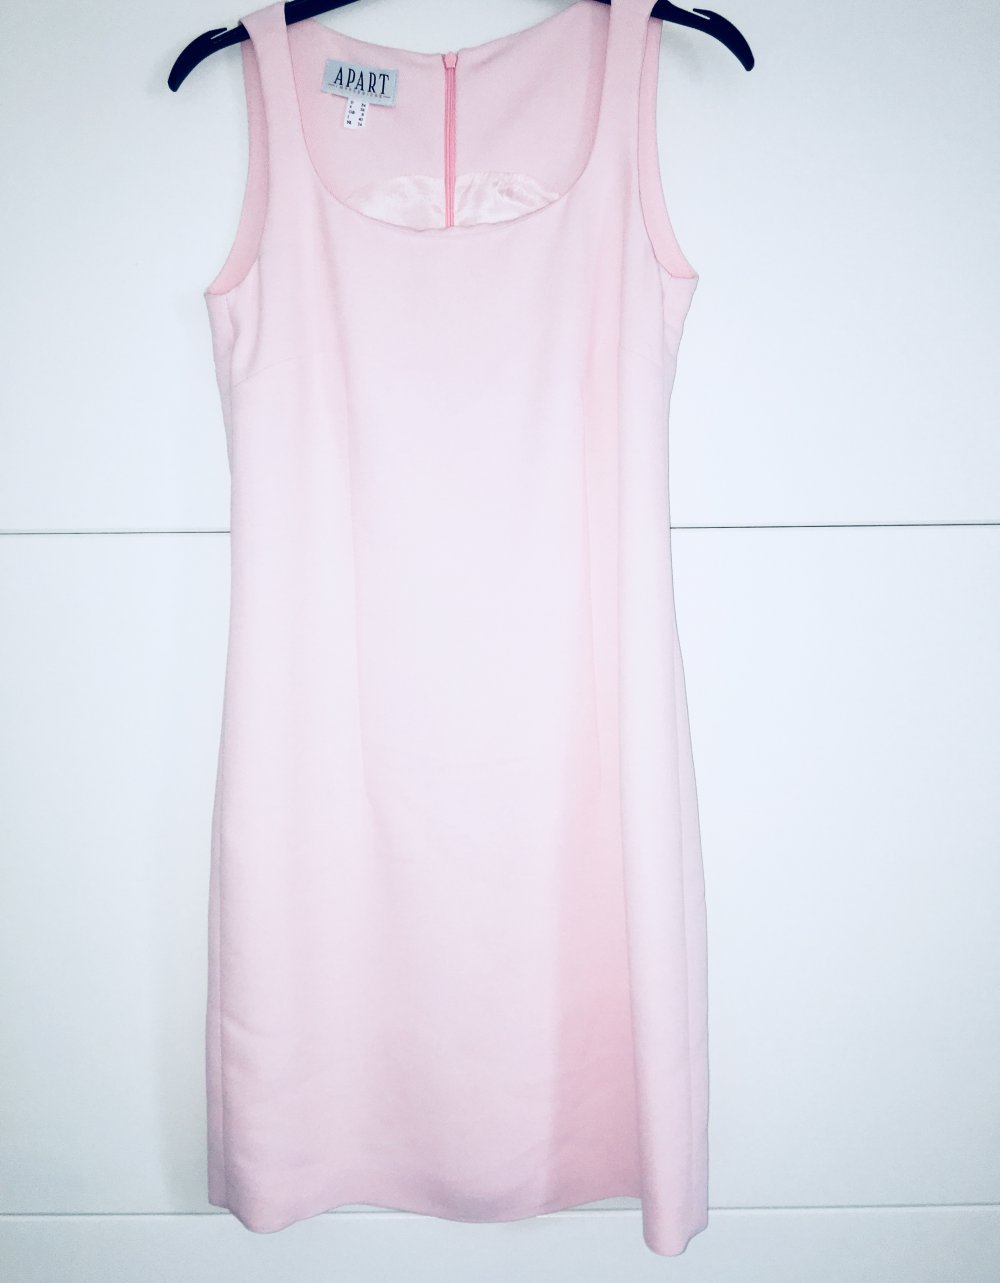 Sommerkleid - neu - rosa 